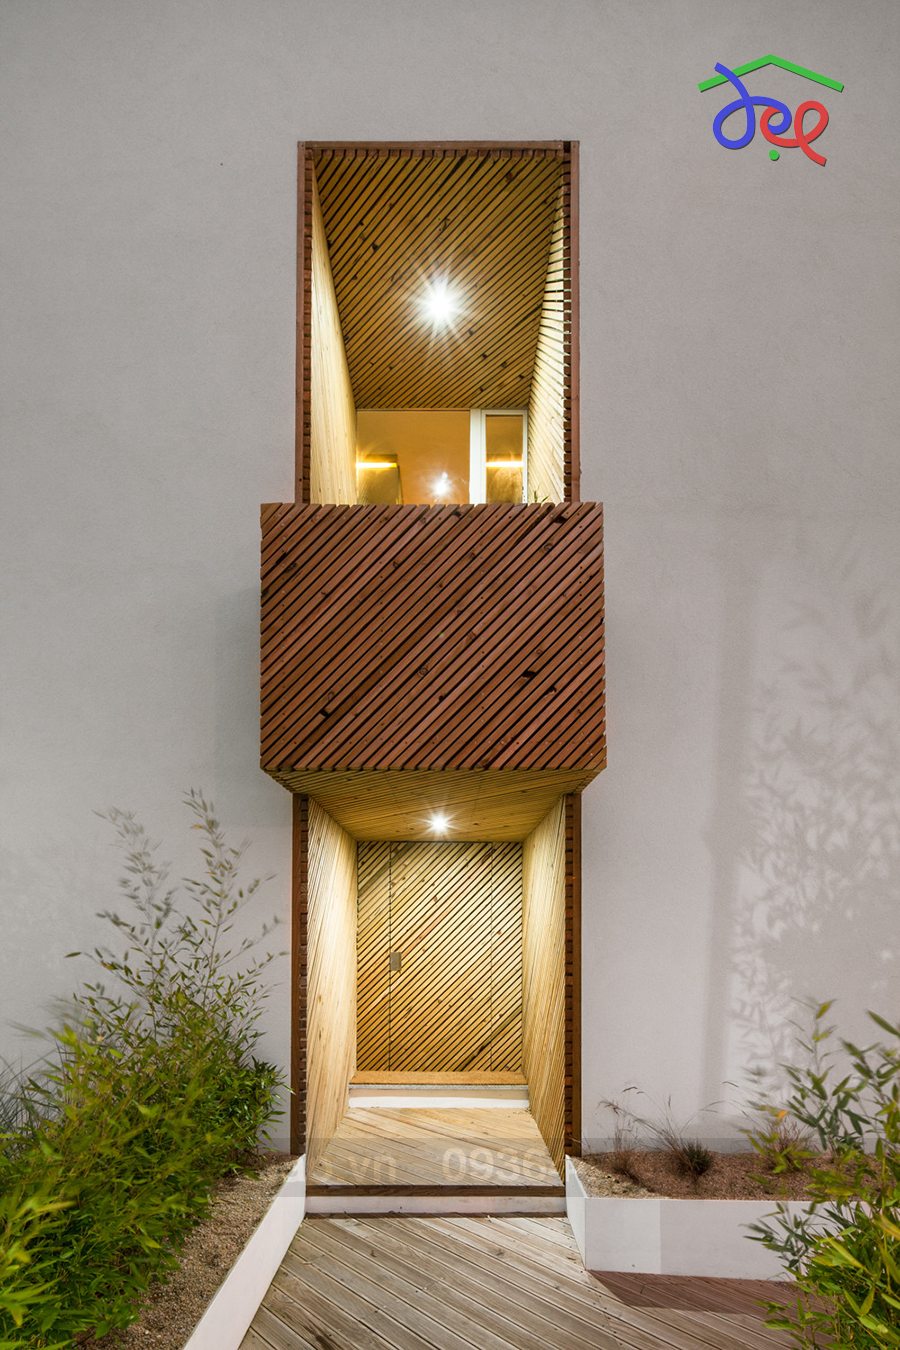 Thiết kế nhà phố 2 tầng bằng gỗ ở Bồ Đào Nha